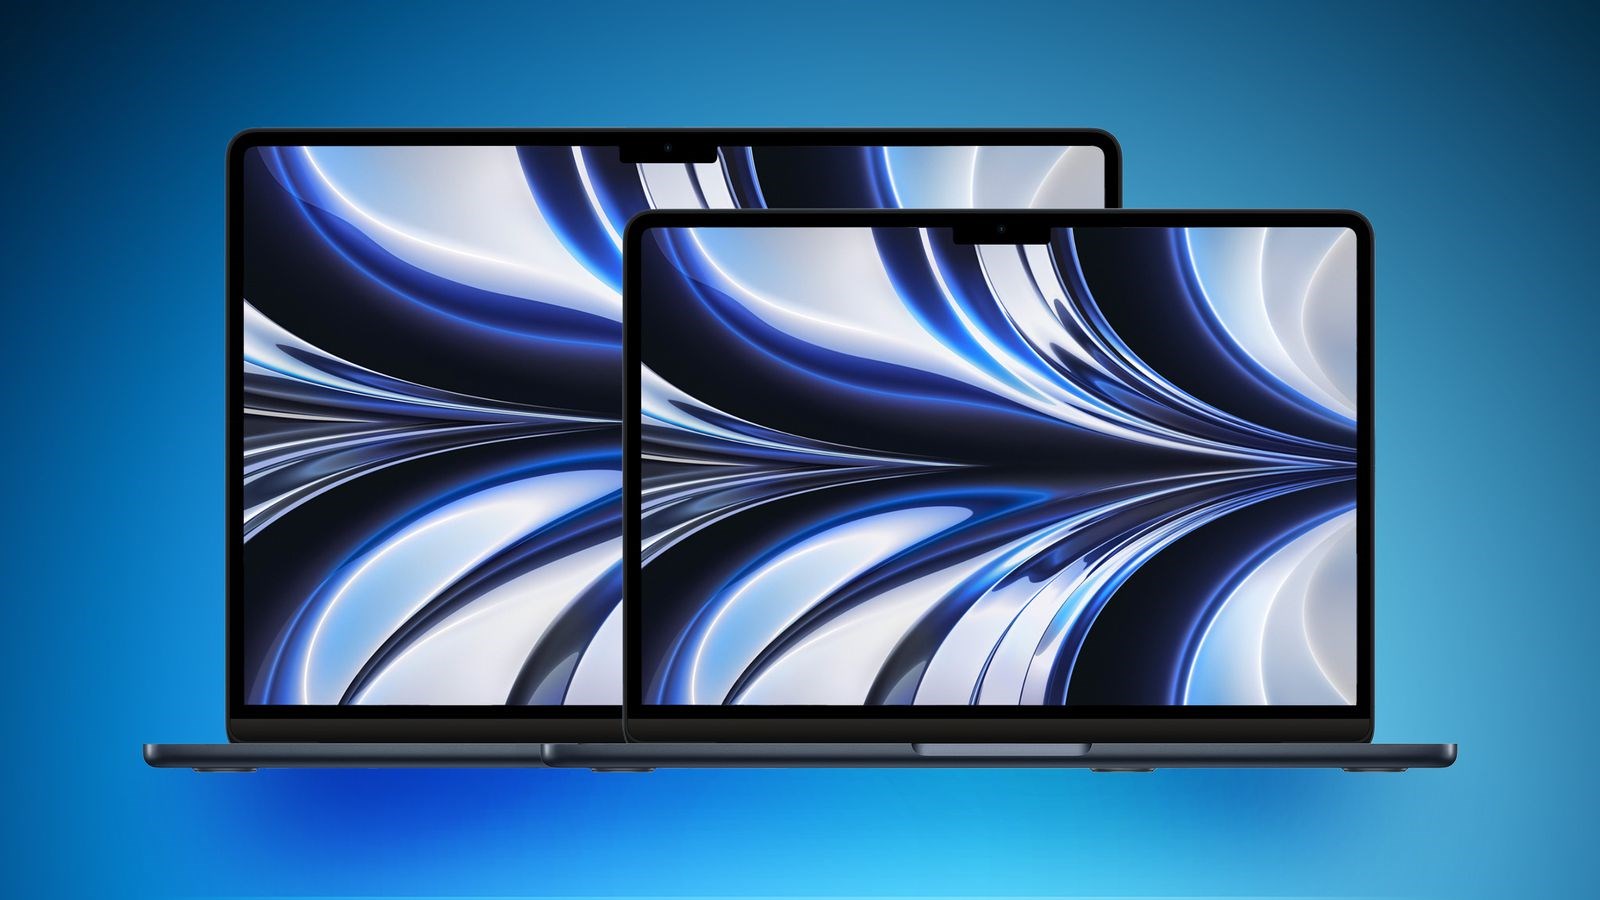 15 inç Macbook Air beklenen özellikler